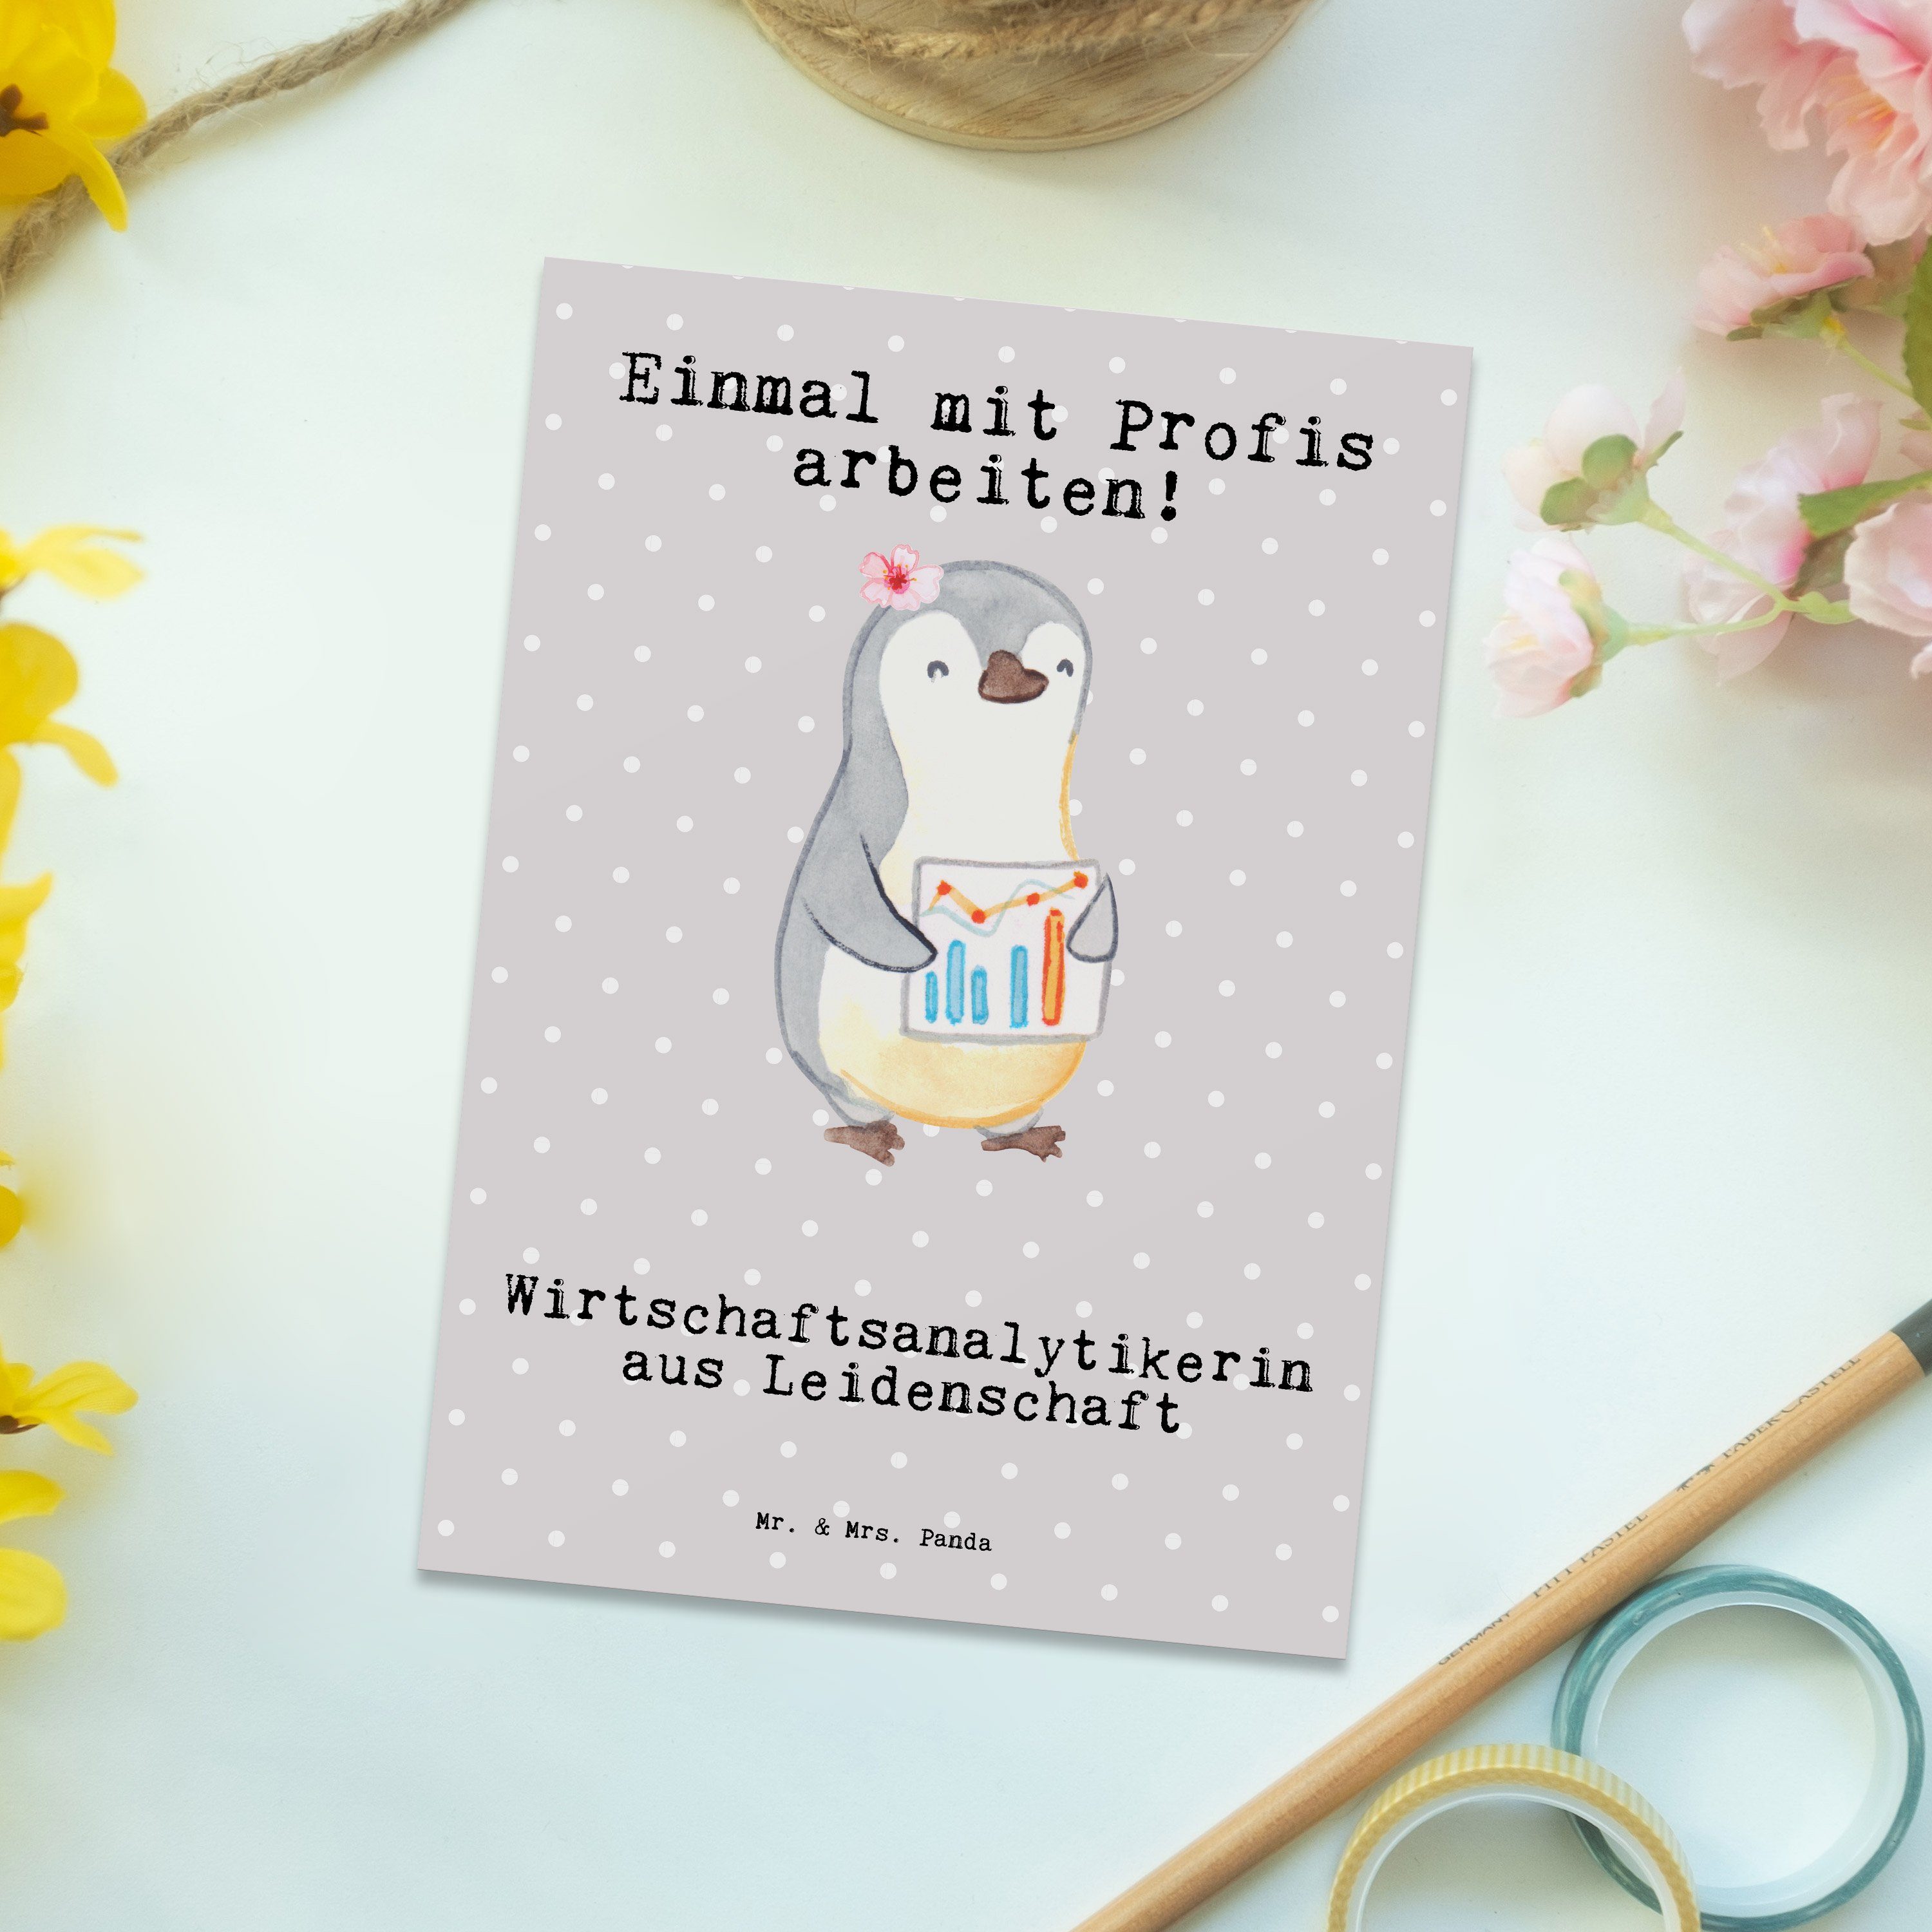 Mr. & Pastell Panda - Mrs. Wirtschaftsanalytikerin Geschenk, Grau K - aus Leidenschaft Postkarte